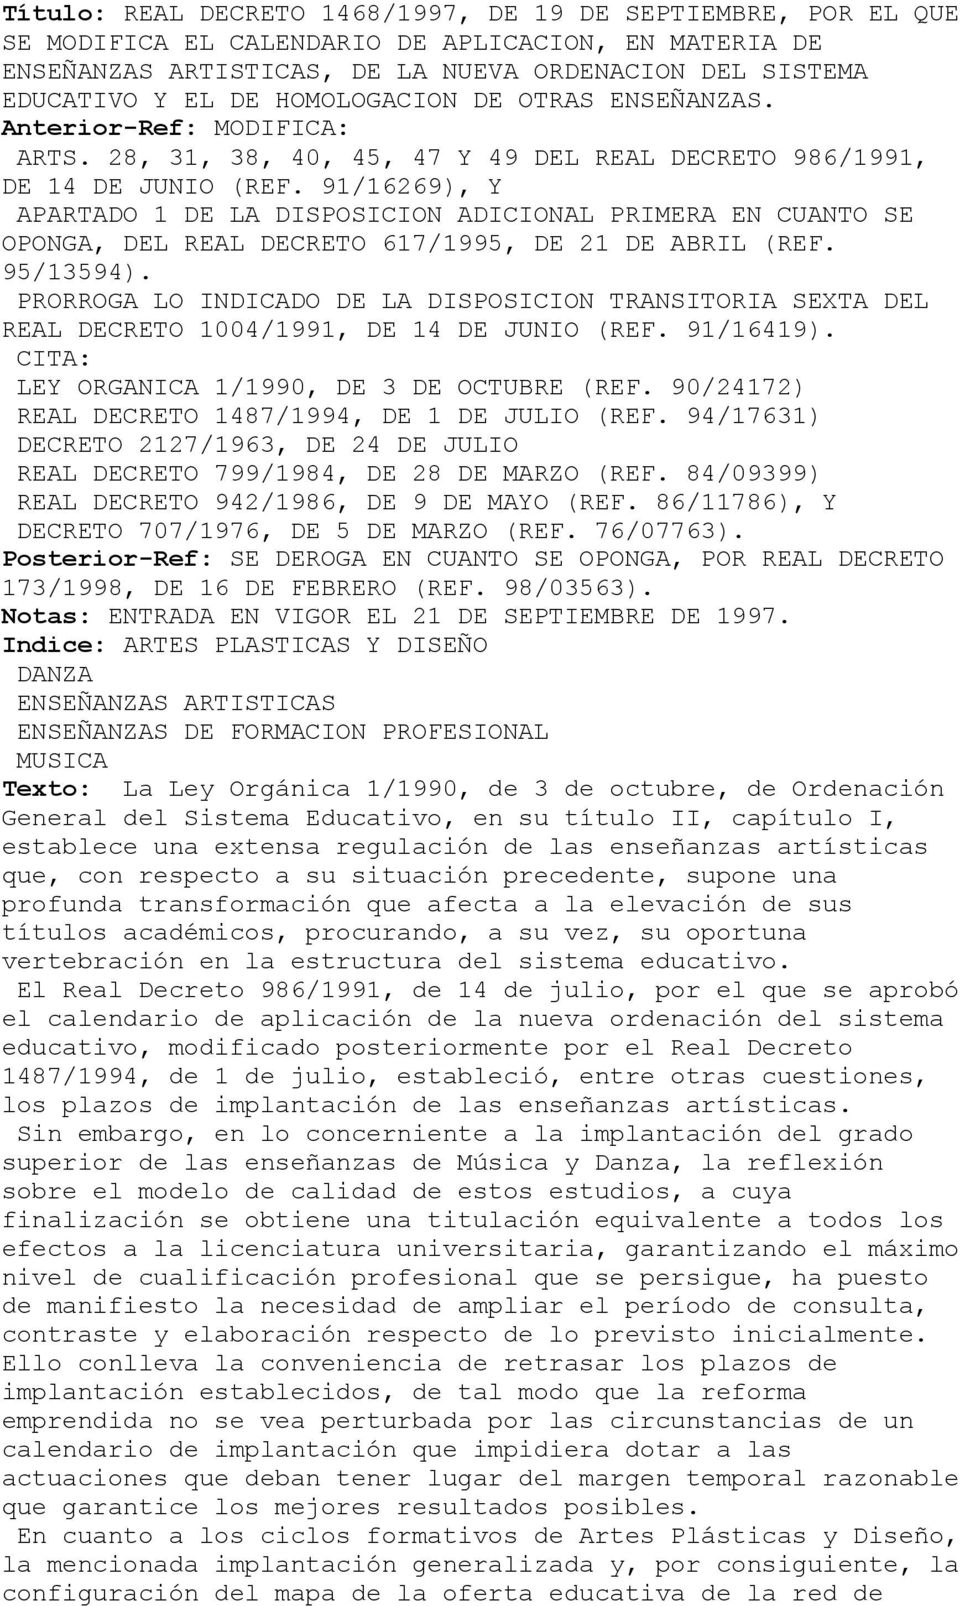 91/16269), Y APARTADO 1 DE LA DISPOSICION ADICIONAL PRIMERA EN CUANTO SE OPONGA, DEL REAL DECRETO 617/1995, DE 21 DE ABRIL (REF. 95/13594).